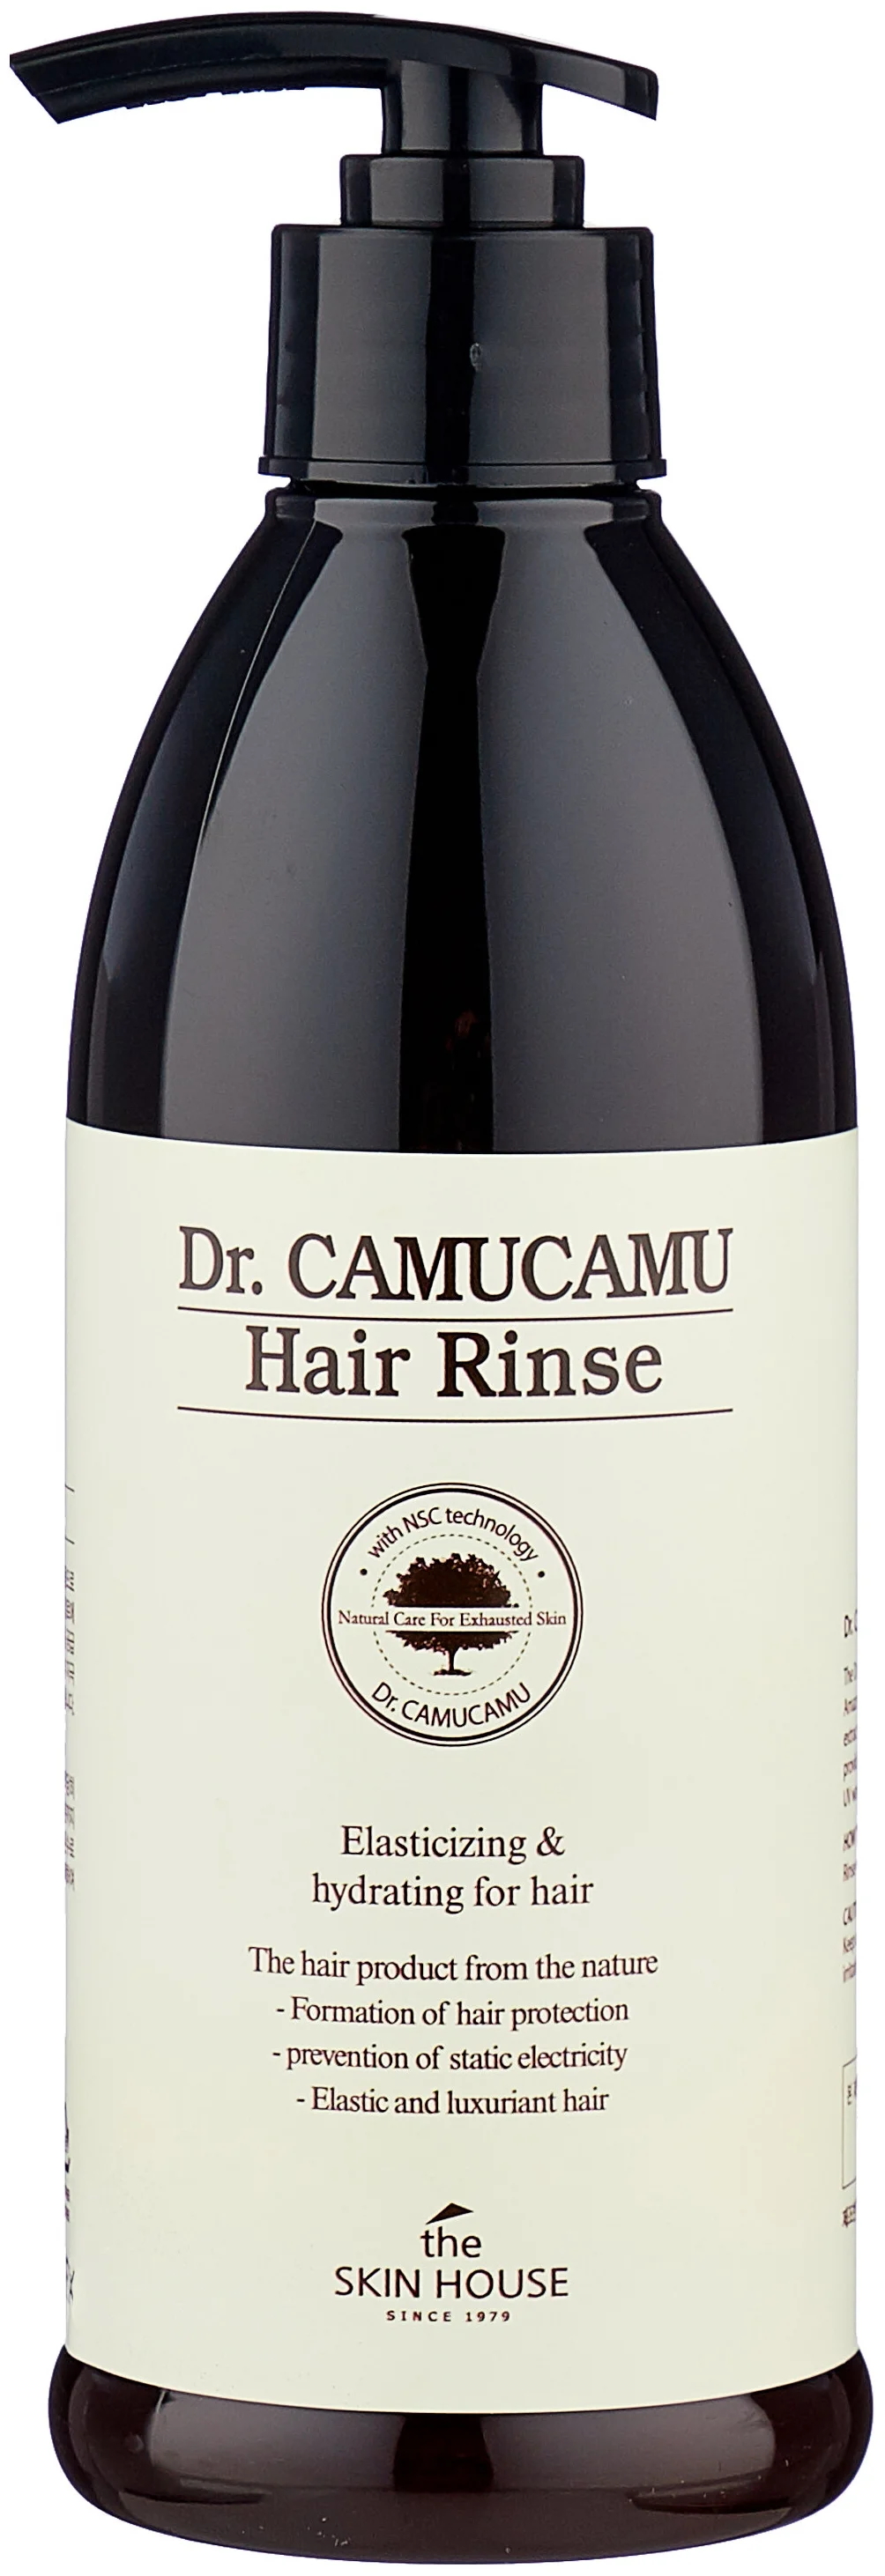 Бальзам для волос с экстрактом каму-каму The Skin House Dr. CamuCamu Hair Rinse